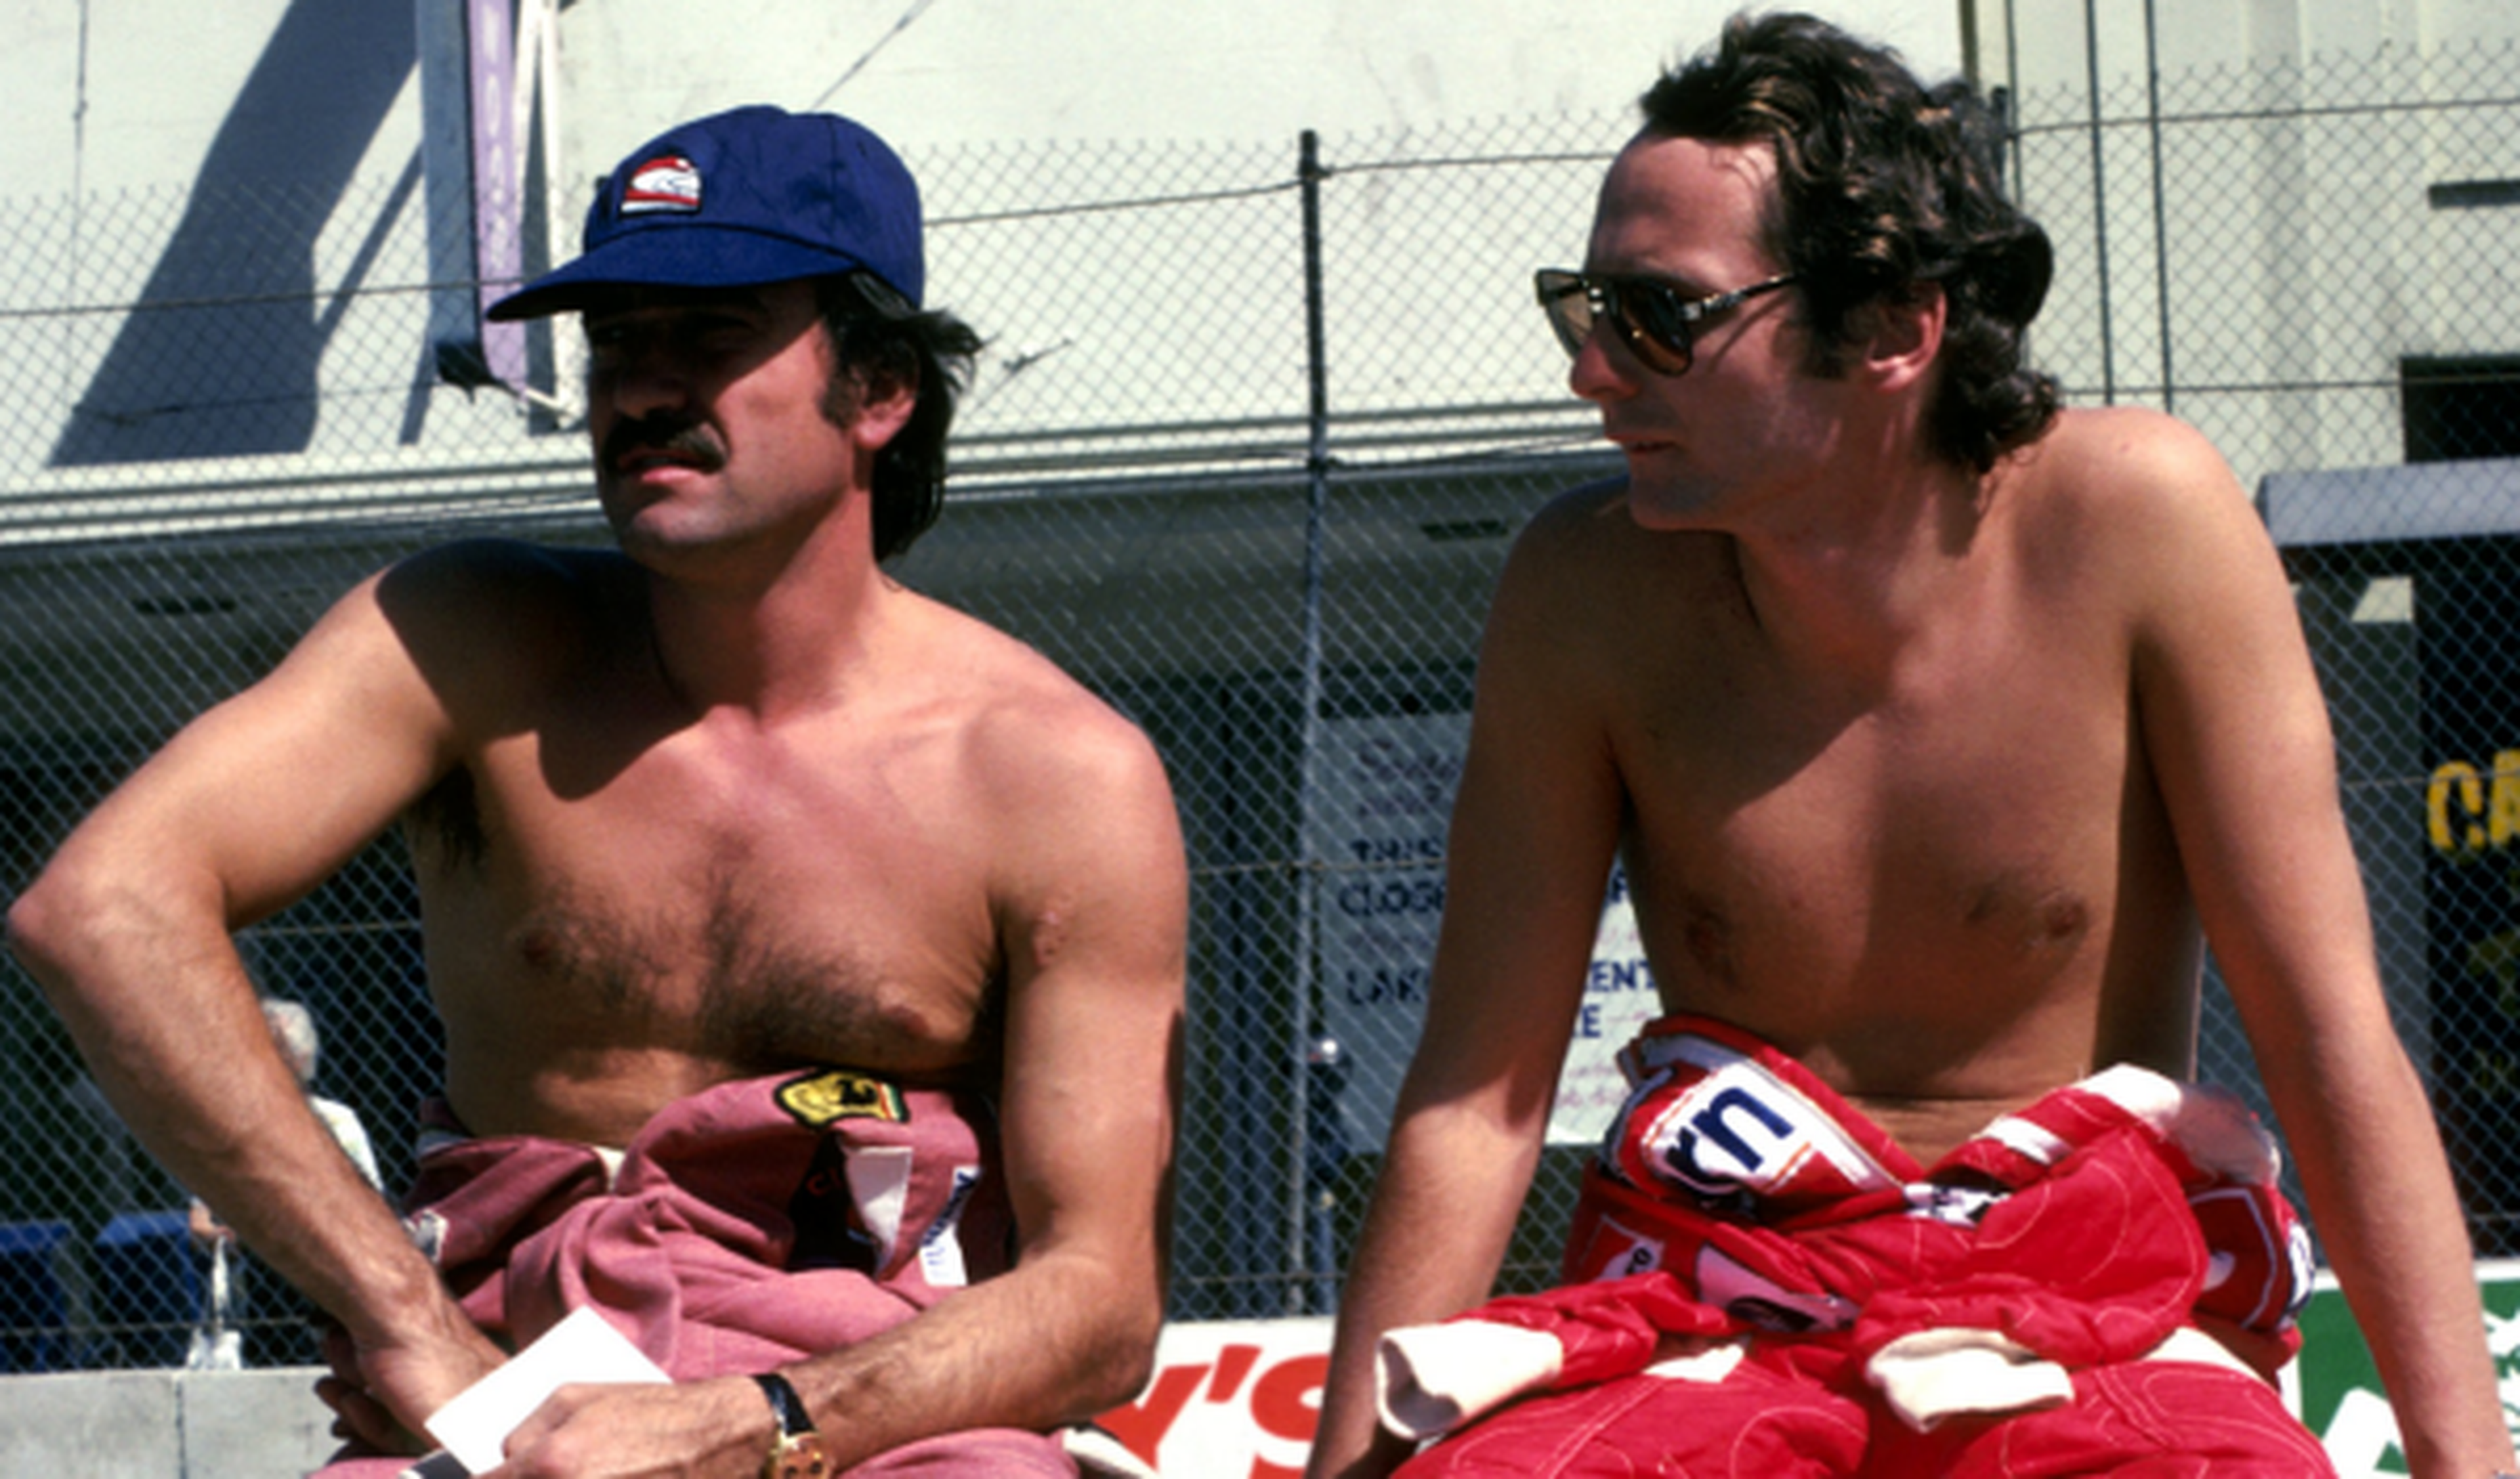 Regazzoni Lauda